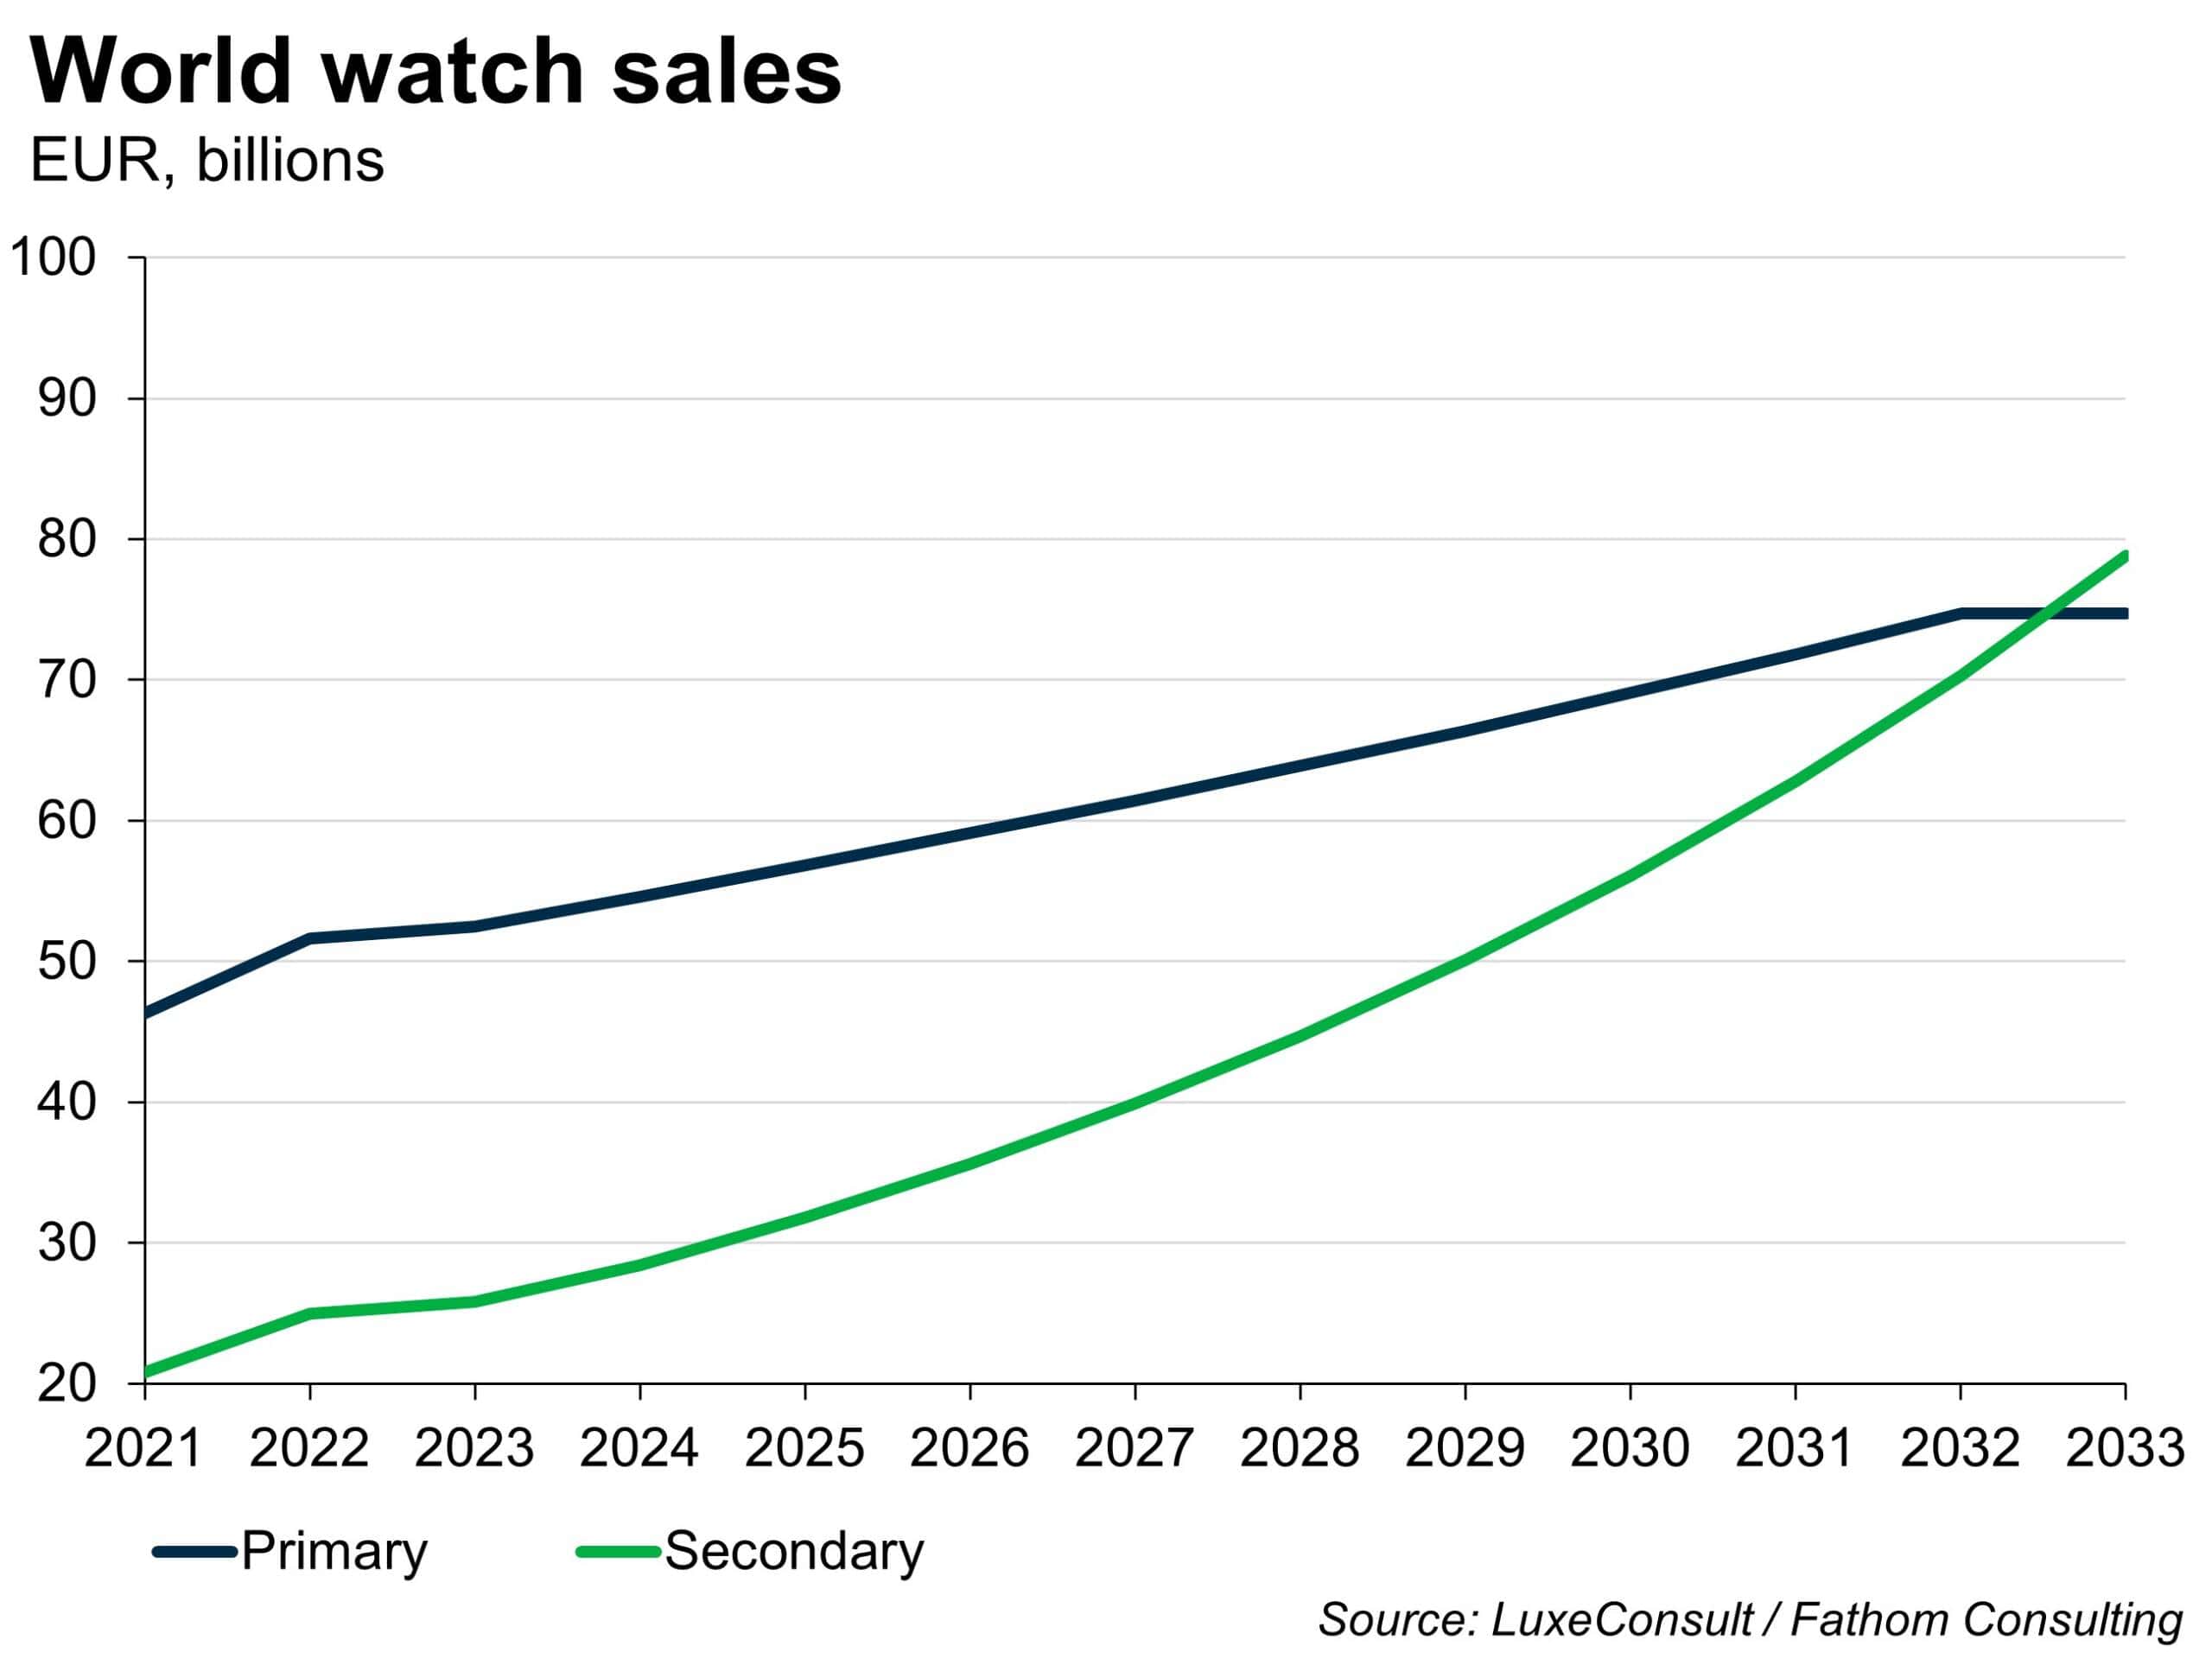 World watch sales, EUR, billions